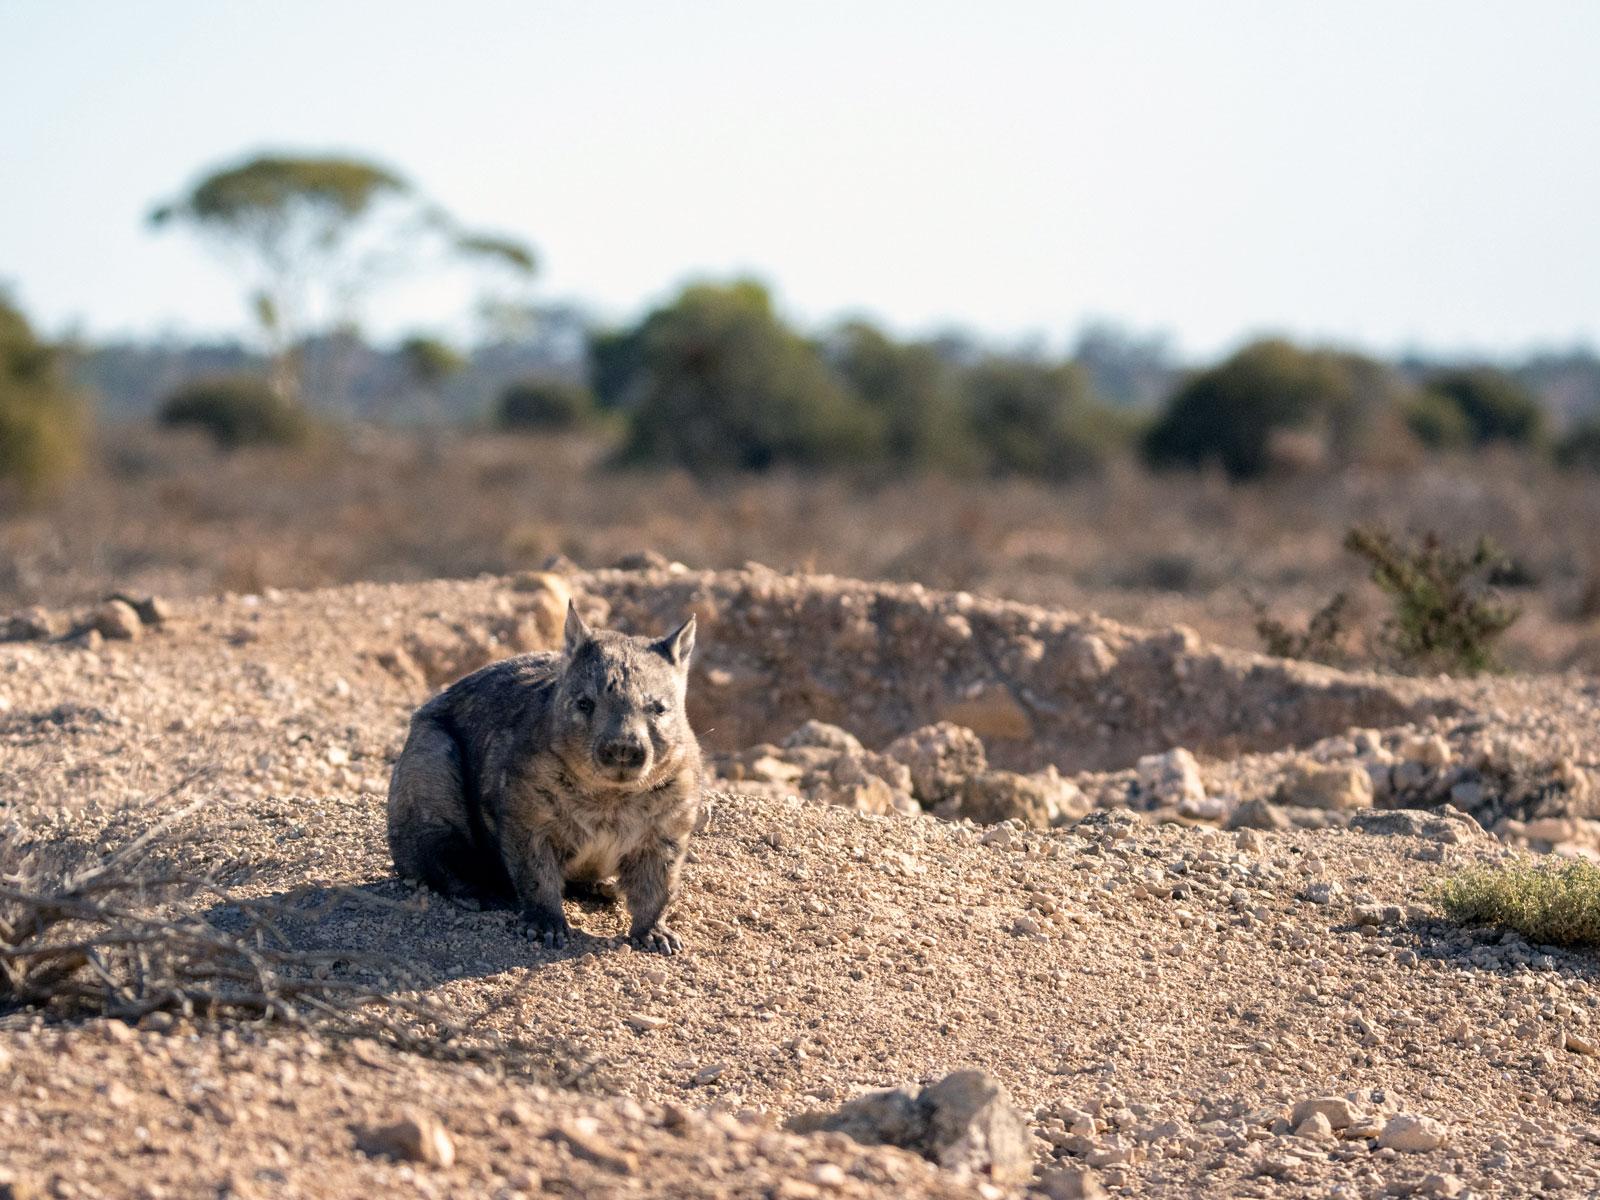 Wombat photo - Raphael Eisenhofer